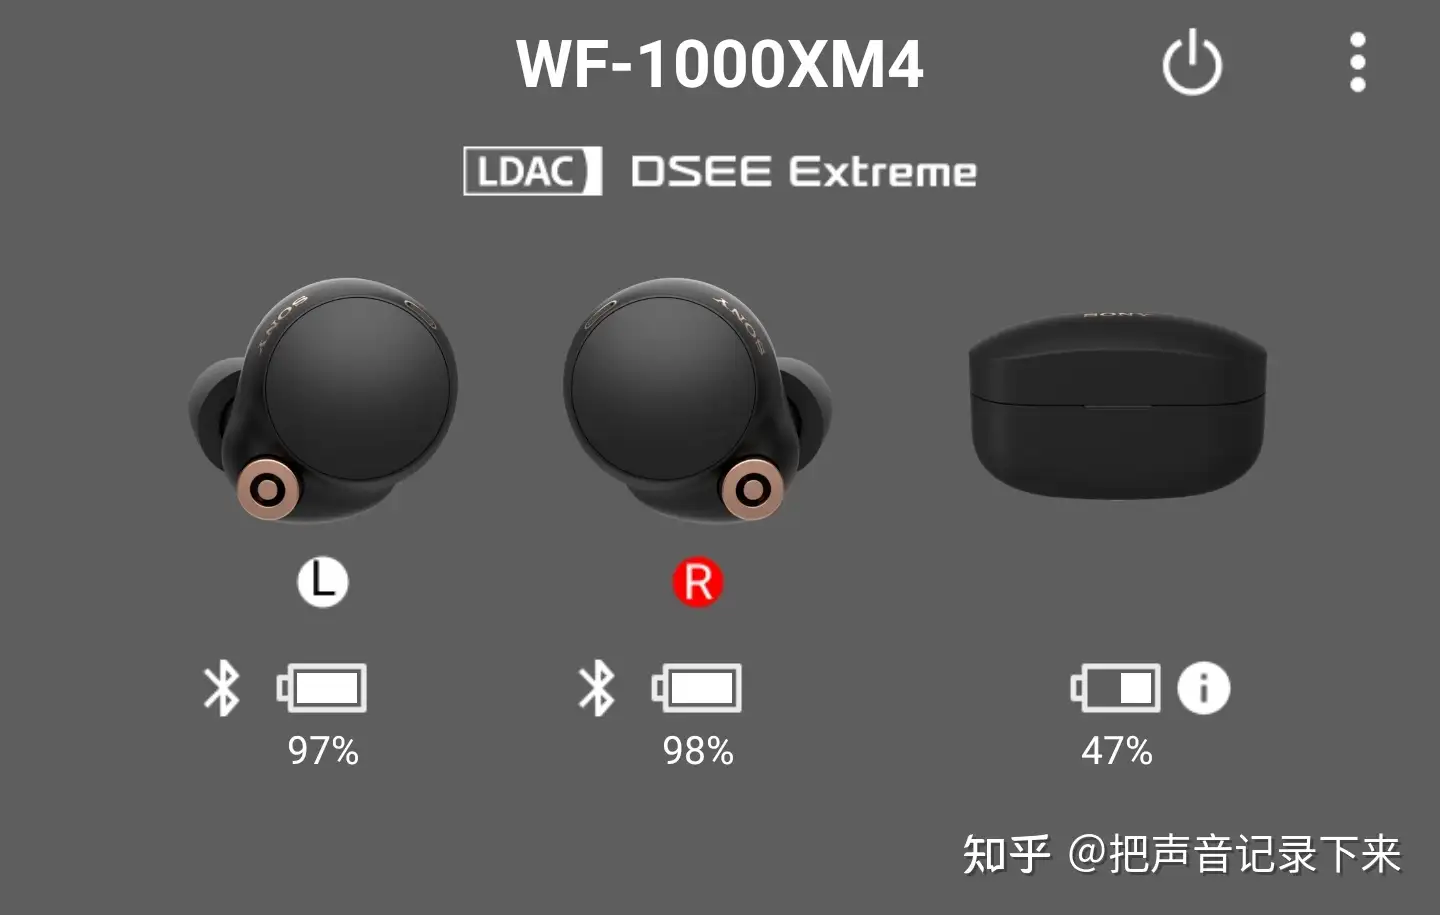 WF-1000XM4 右耳是不是掉电都比左耳快？ - 把声音记录下来的回答- 知乎